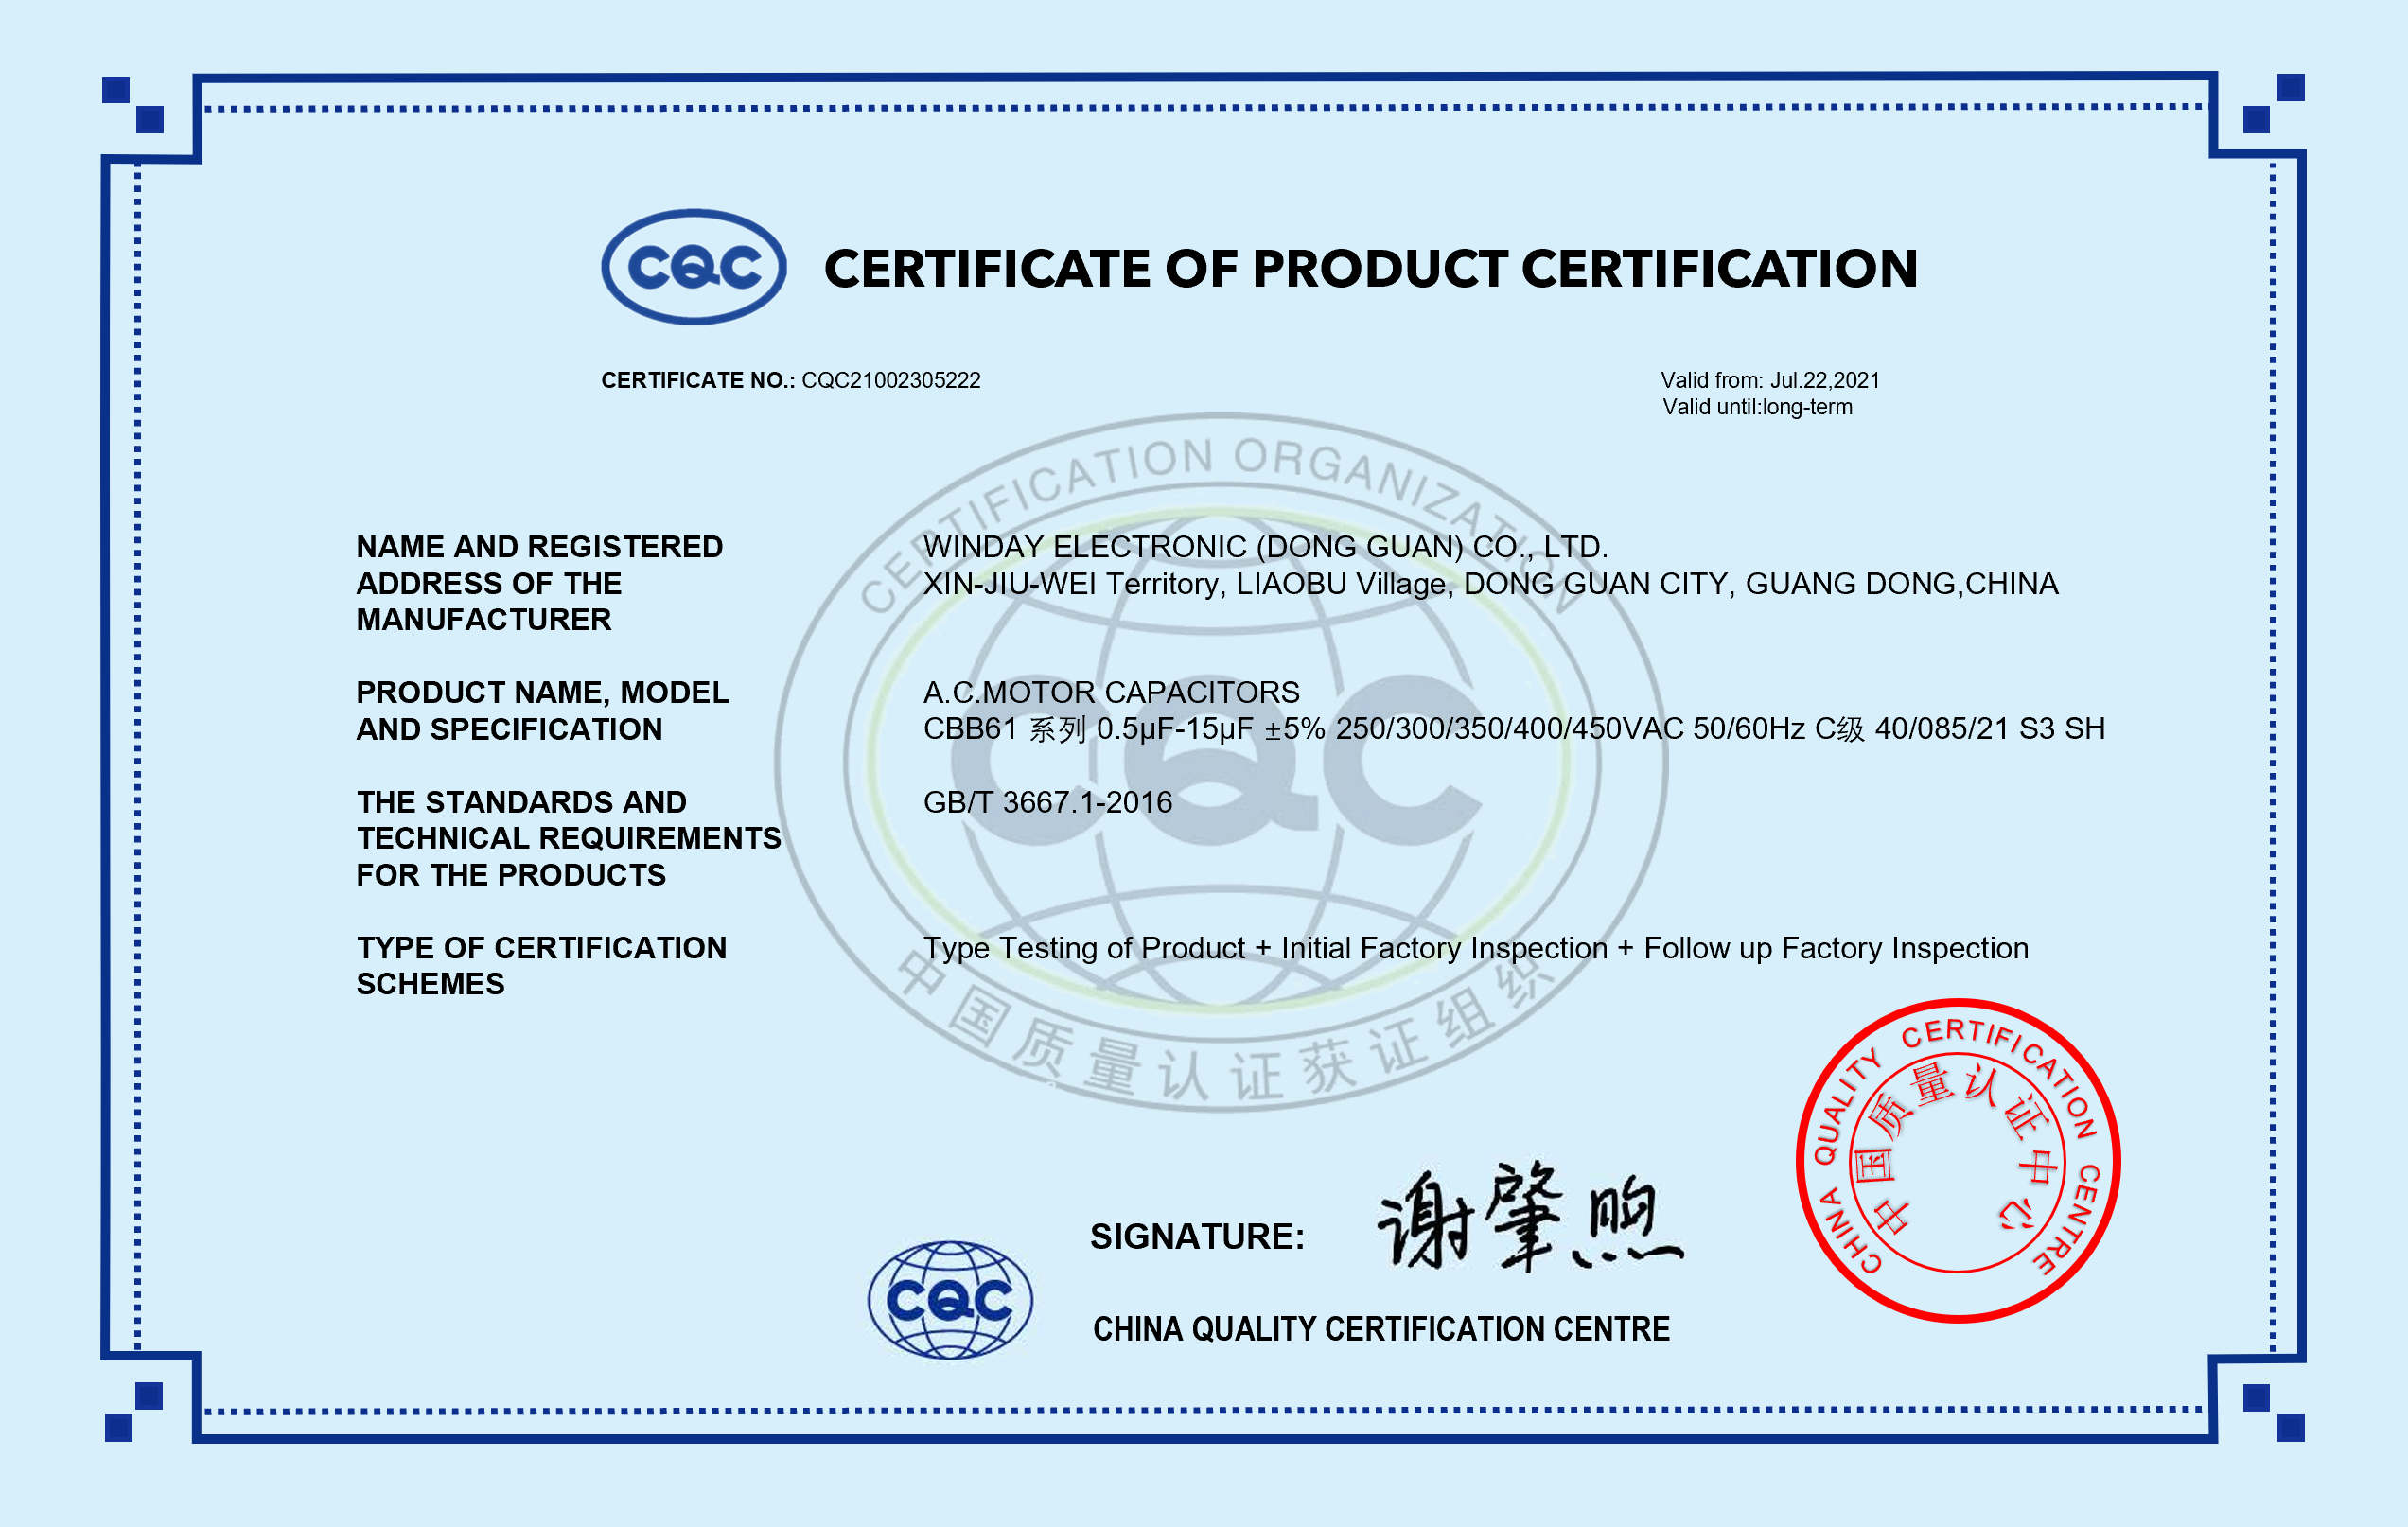 威迪正式取得 “Class-S3馬達啟動電容” CQC 质量標準認證